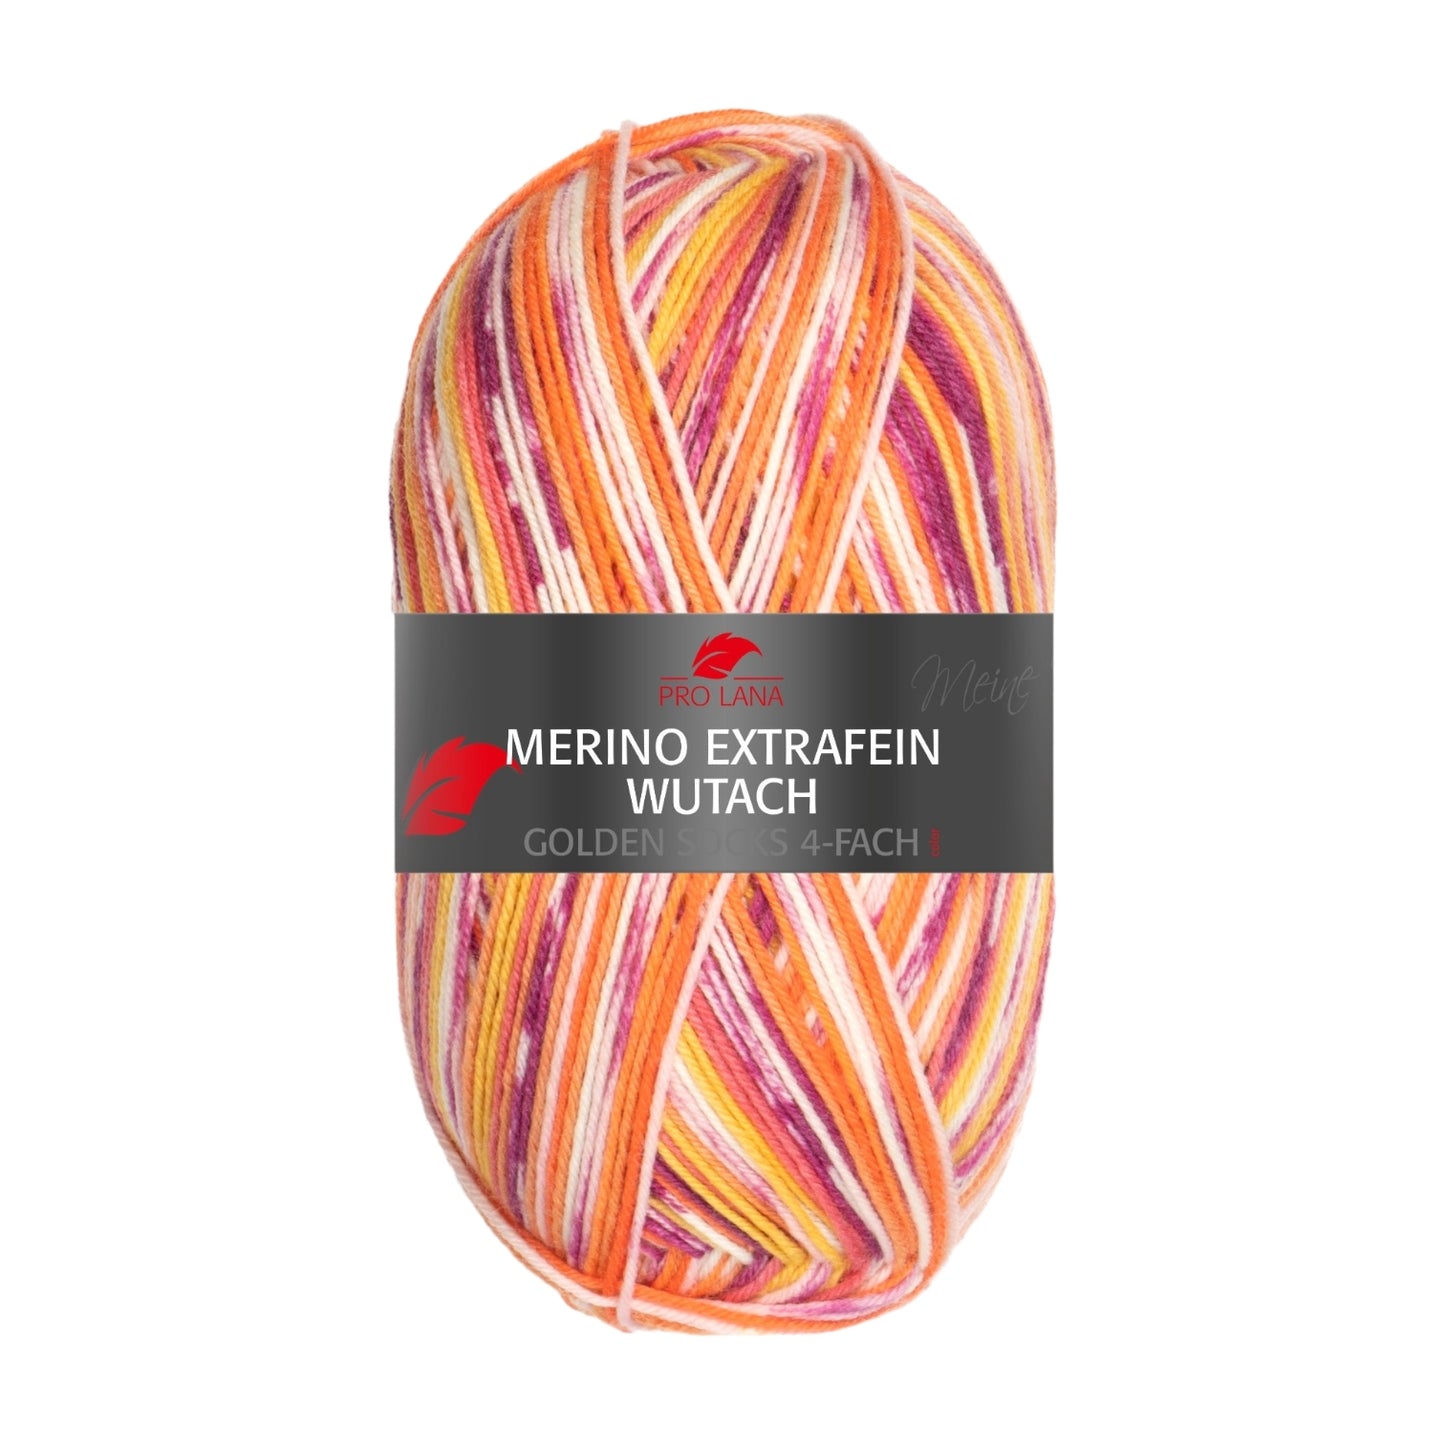 Sockenwolle Merino Extrafein Wutach 4 -fach von Pro Lana